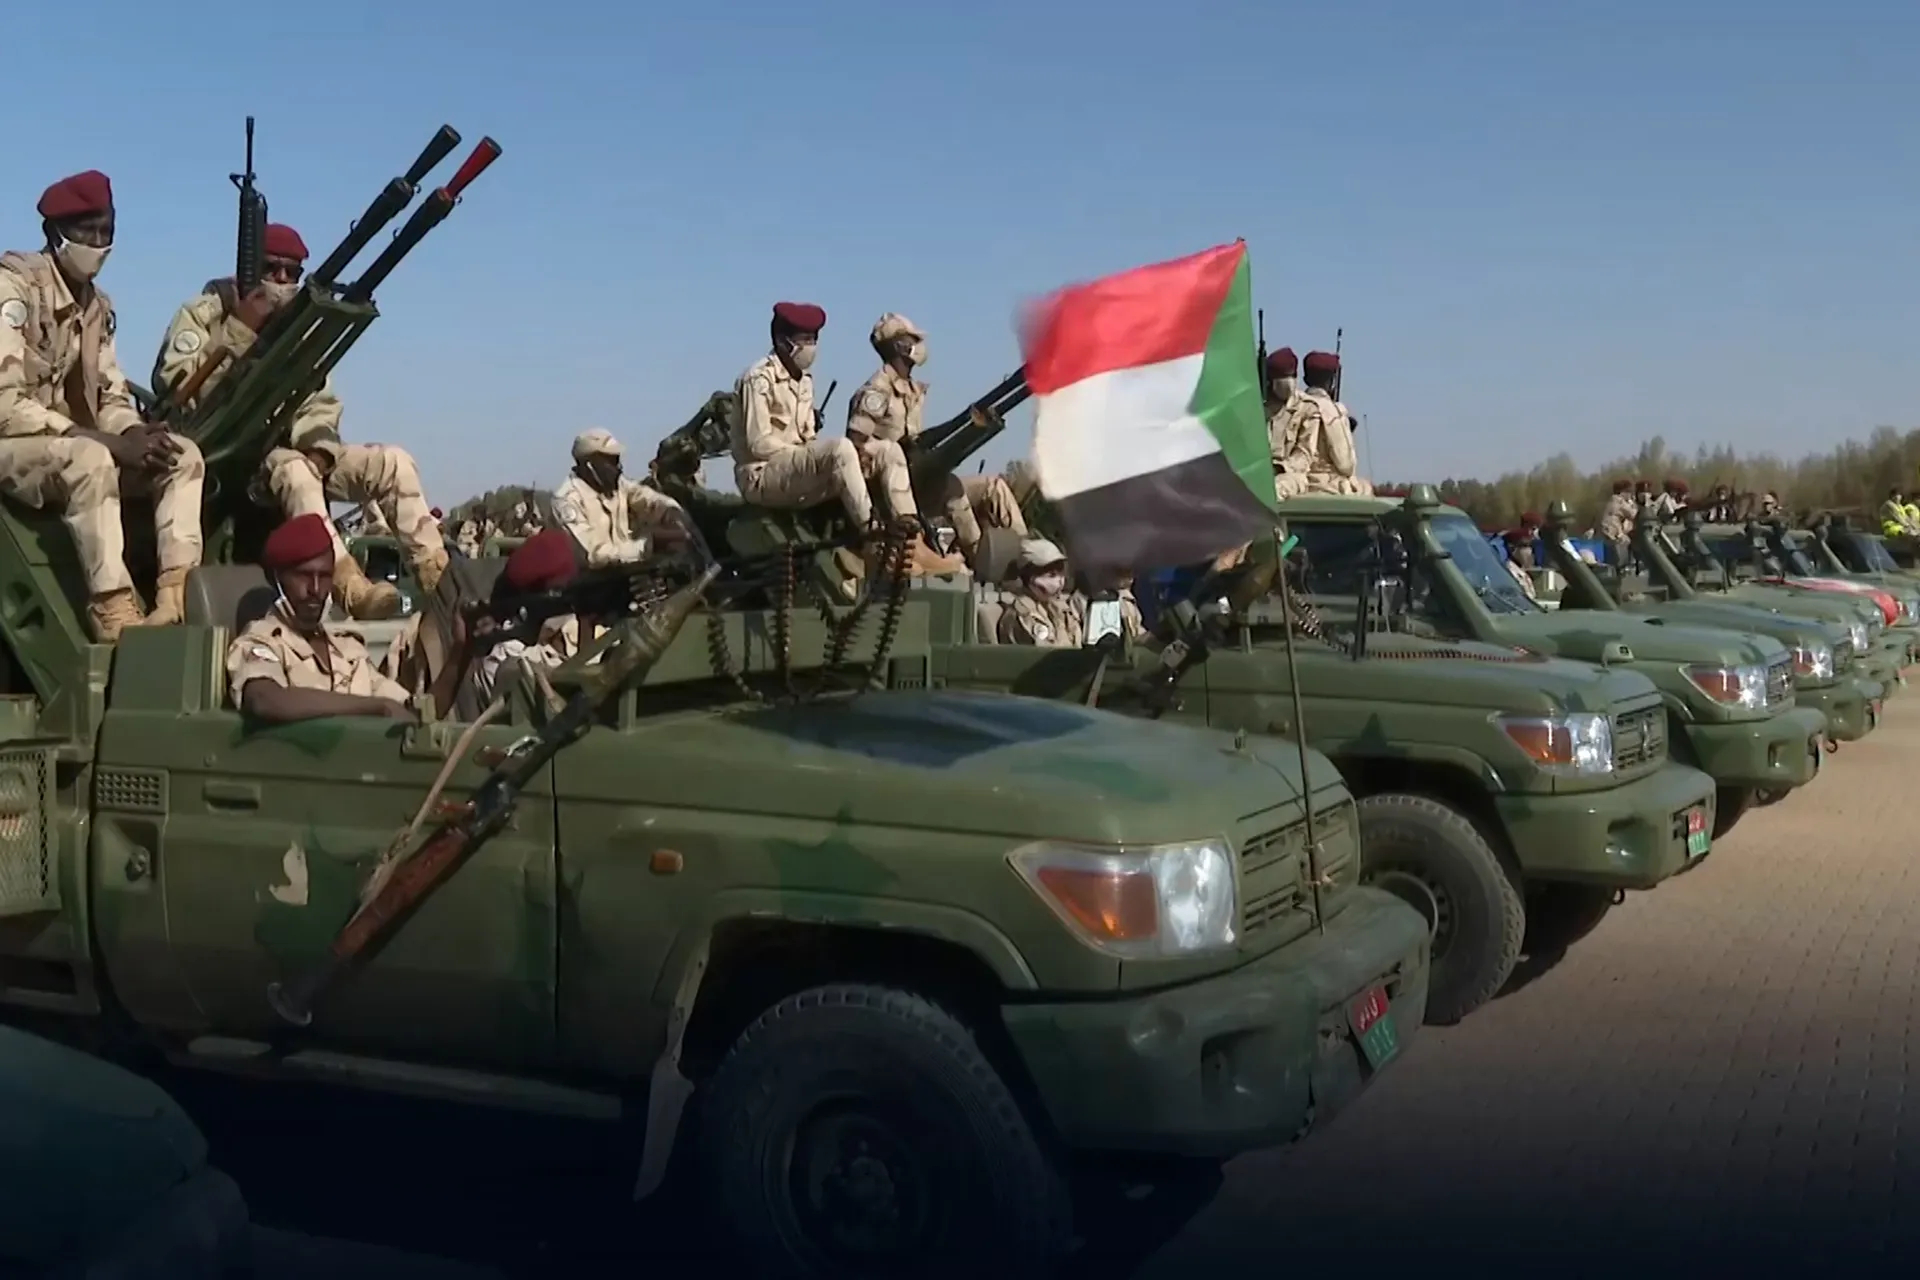 الجيش السوداني : نطاق العمليات سيتوسّع وعلى المواطنين أخذ الحيطة والحذر